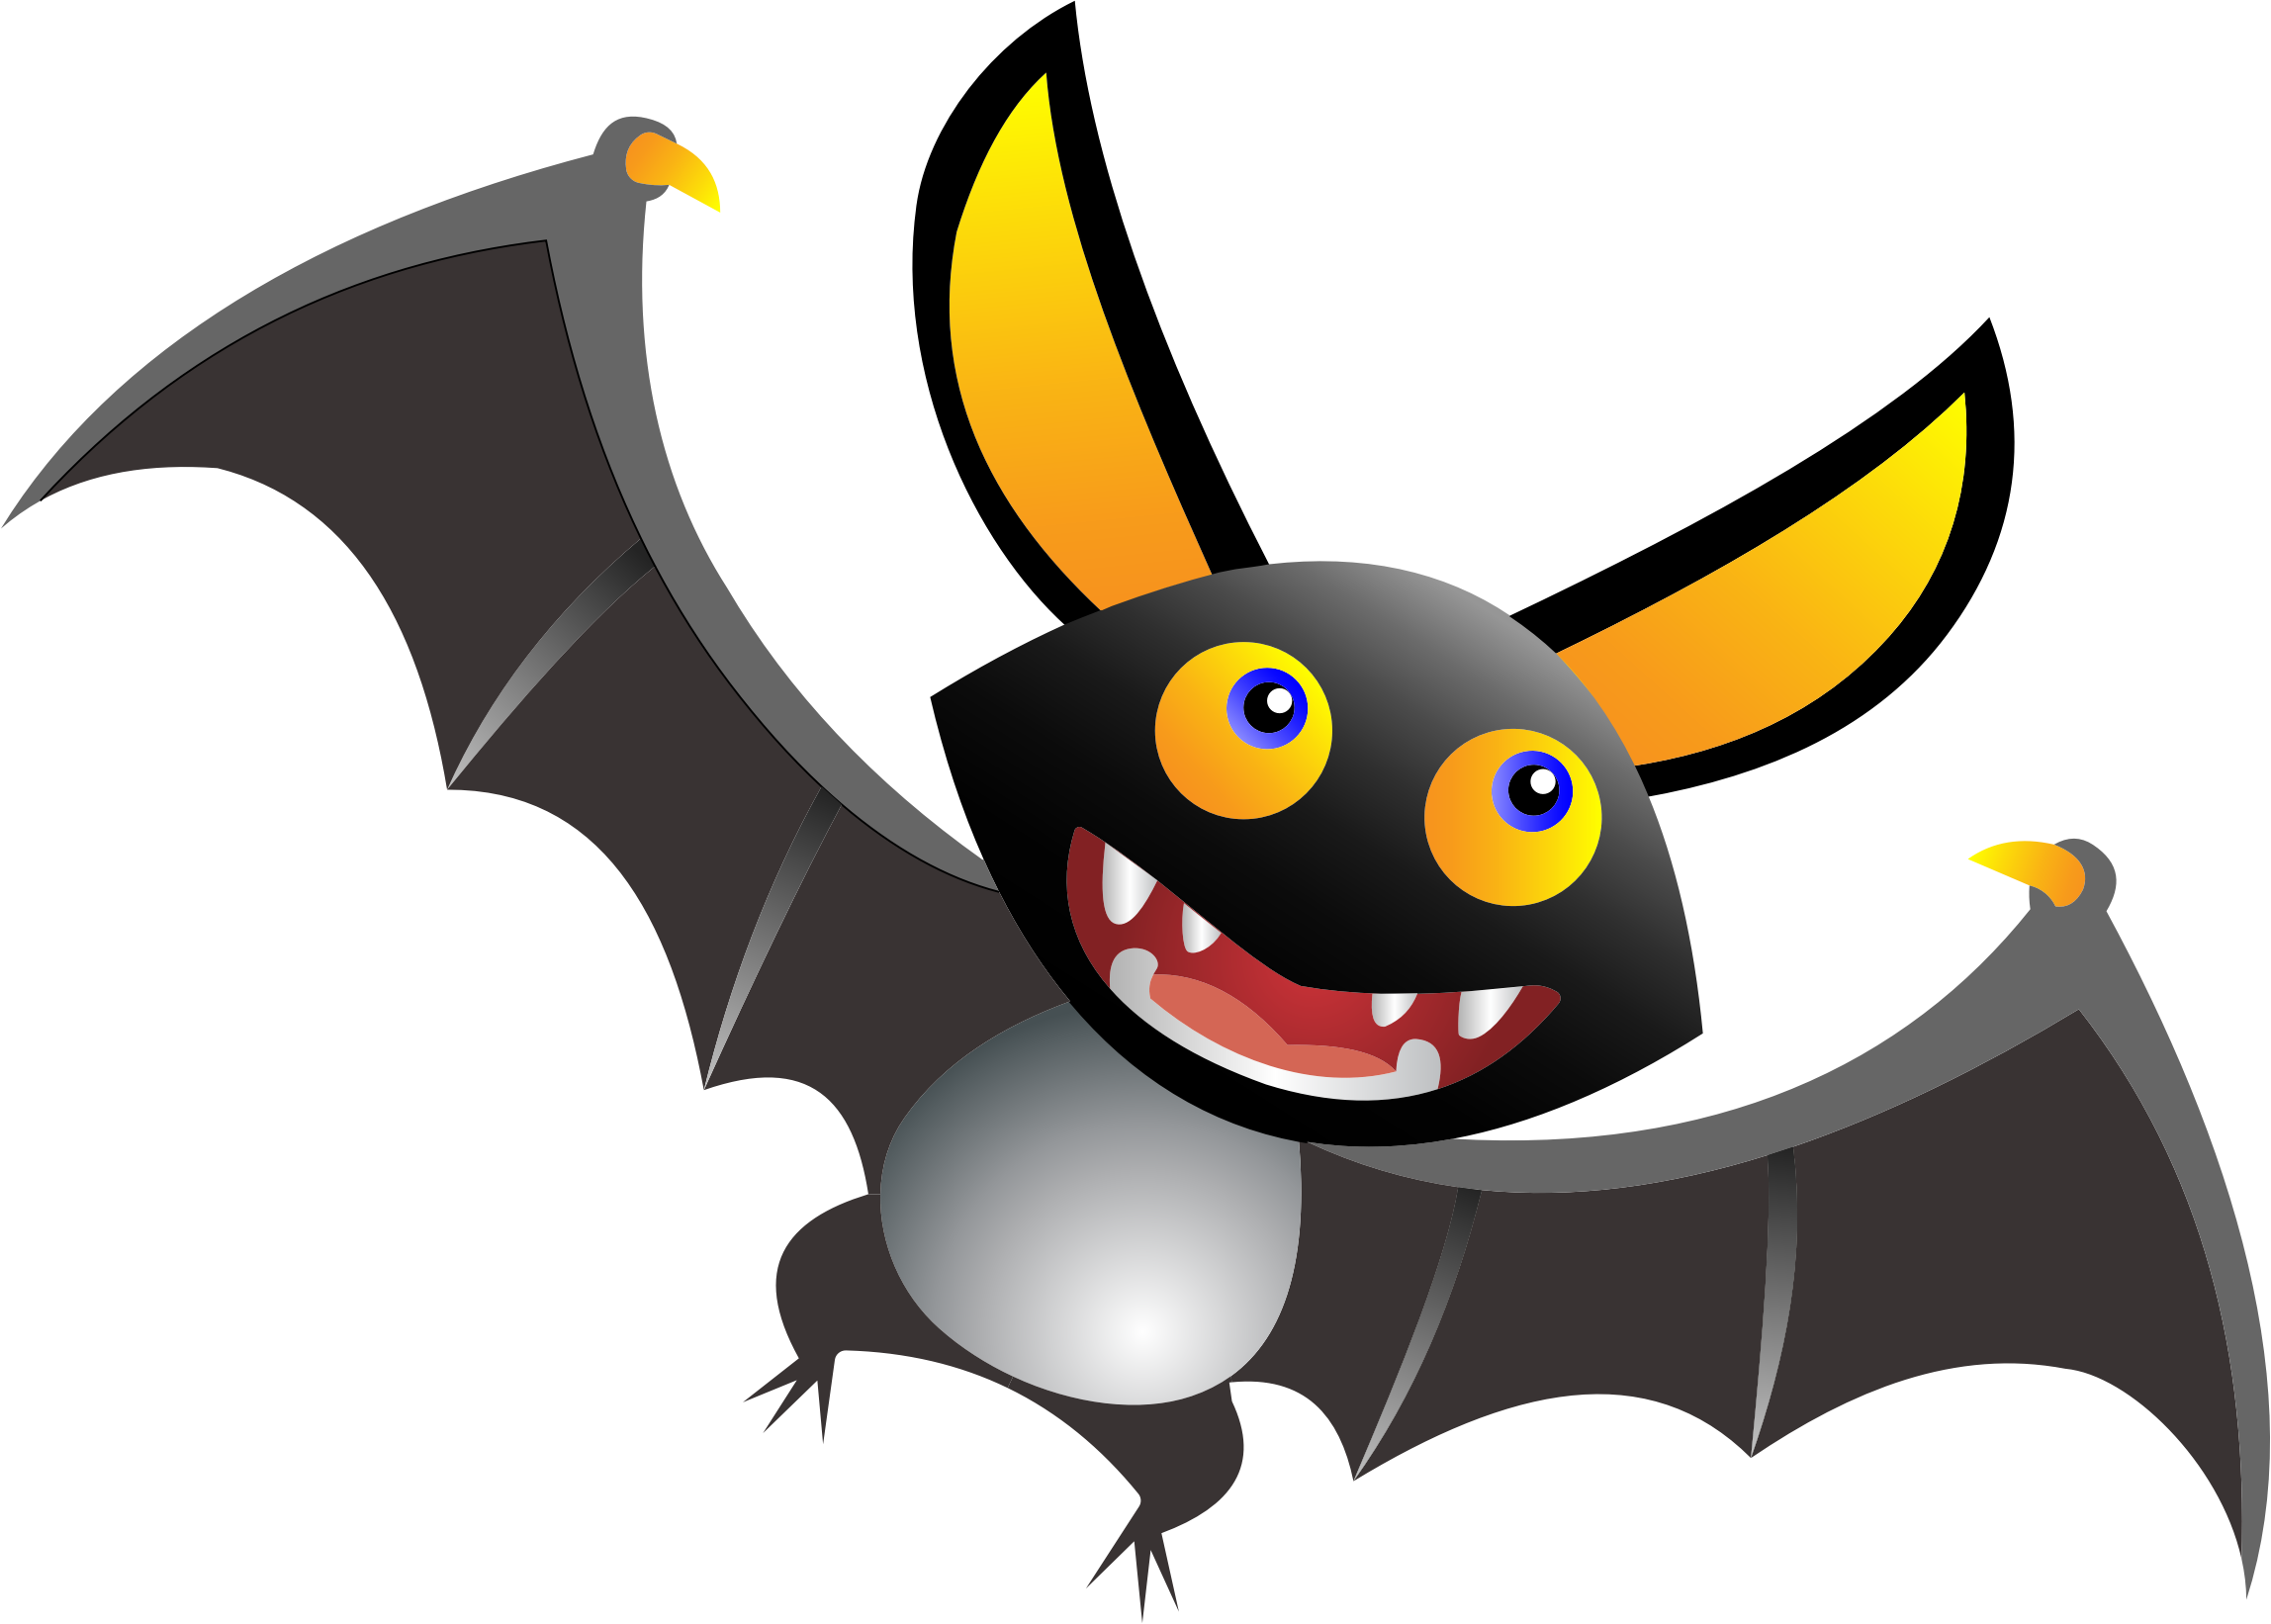 Clipart - Cute Cartoon Bat